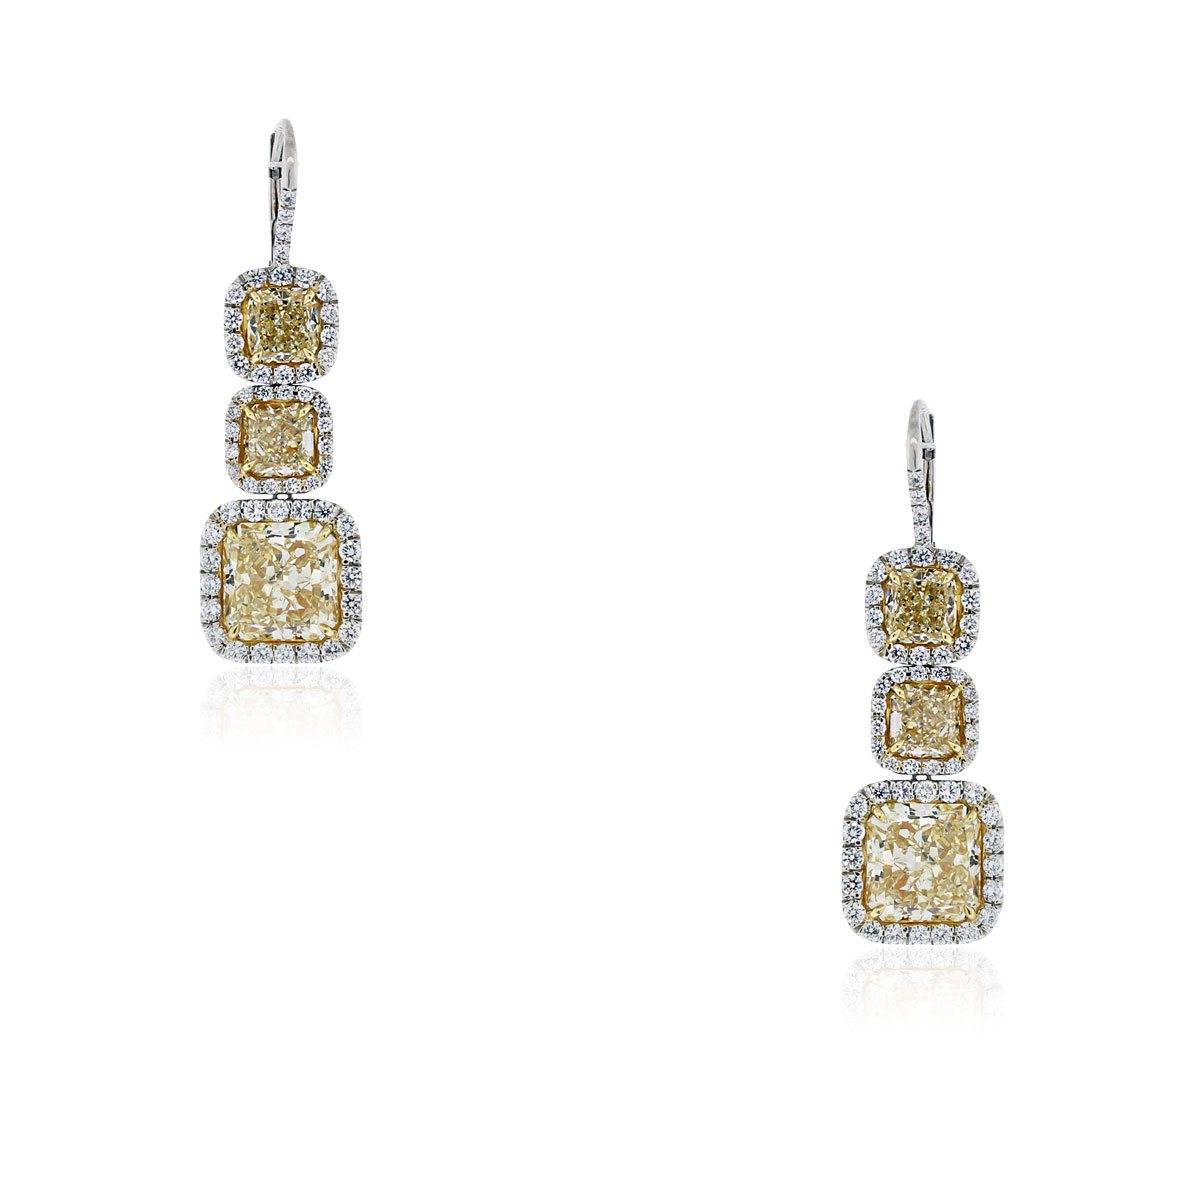 15 carat fancy yellow diamond earrings